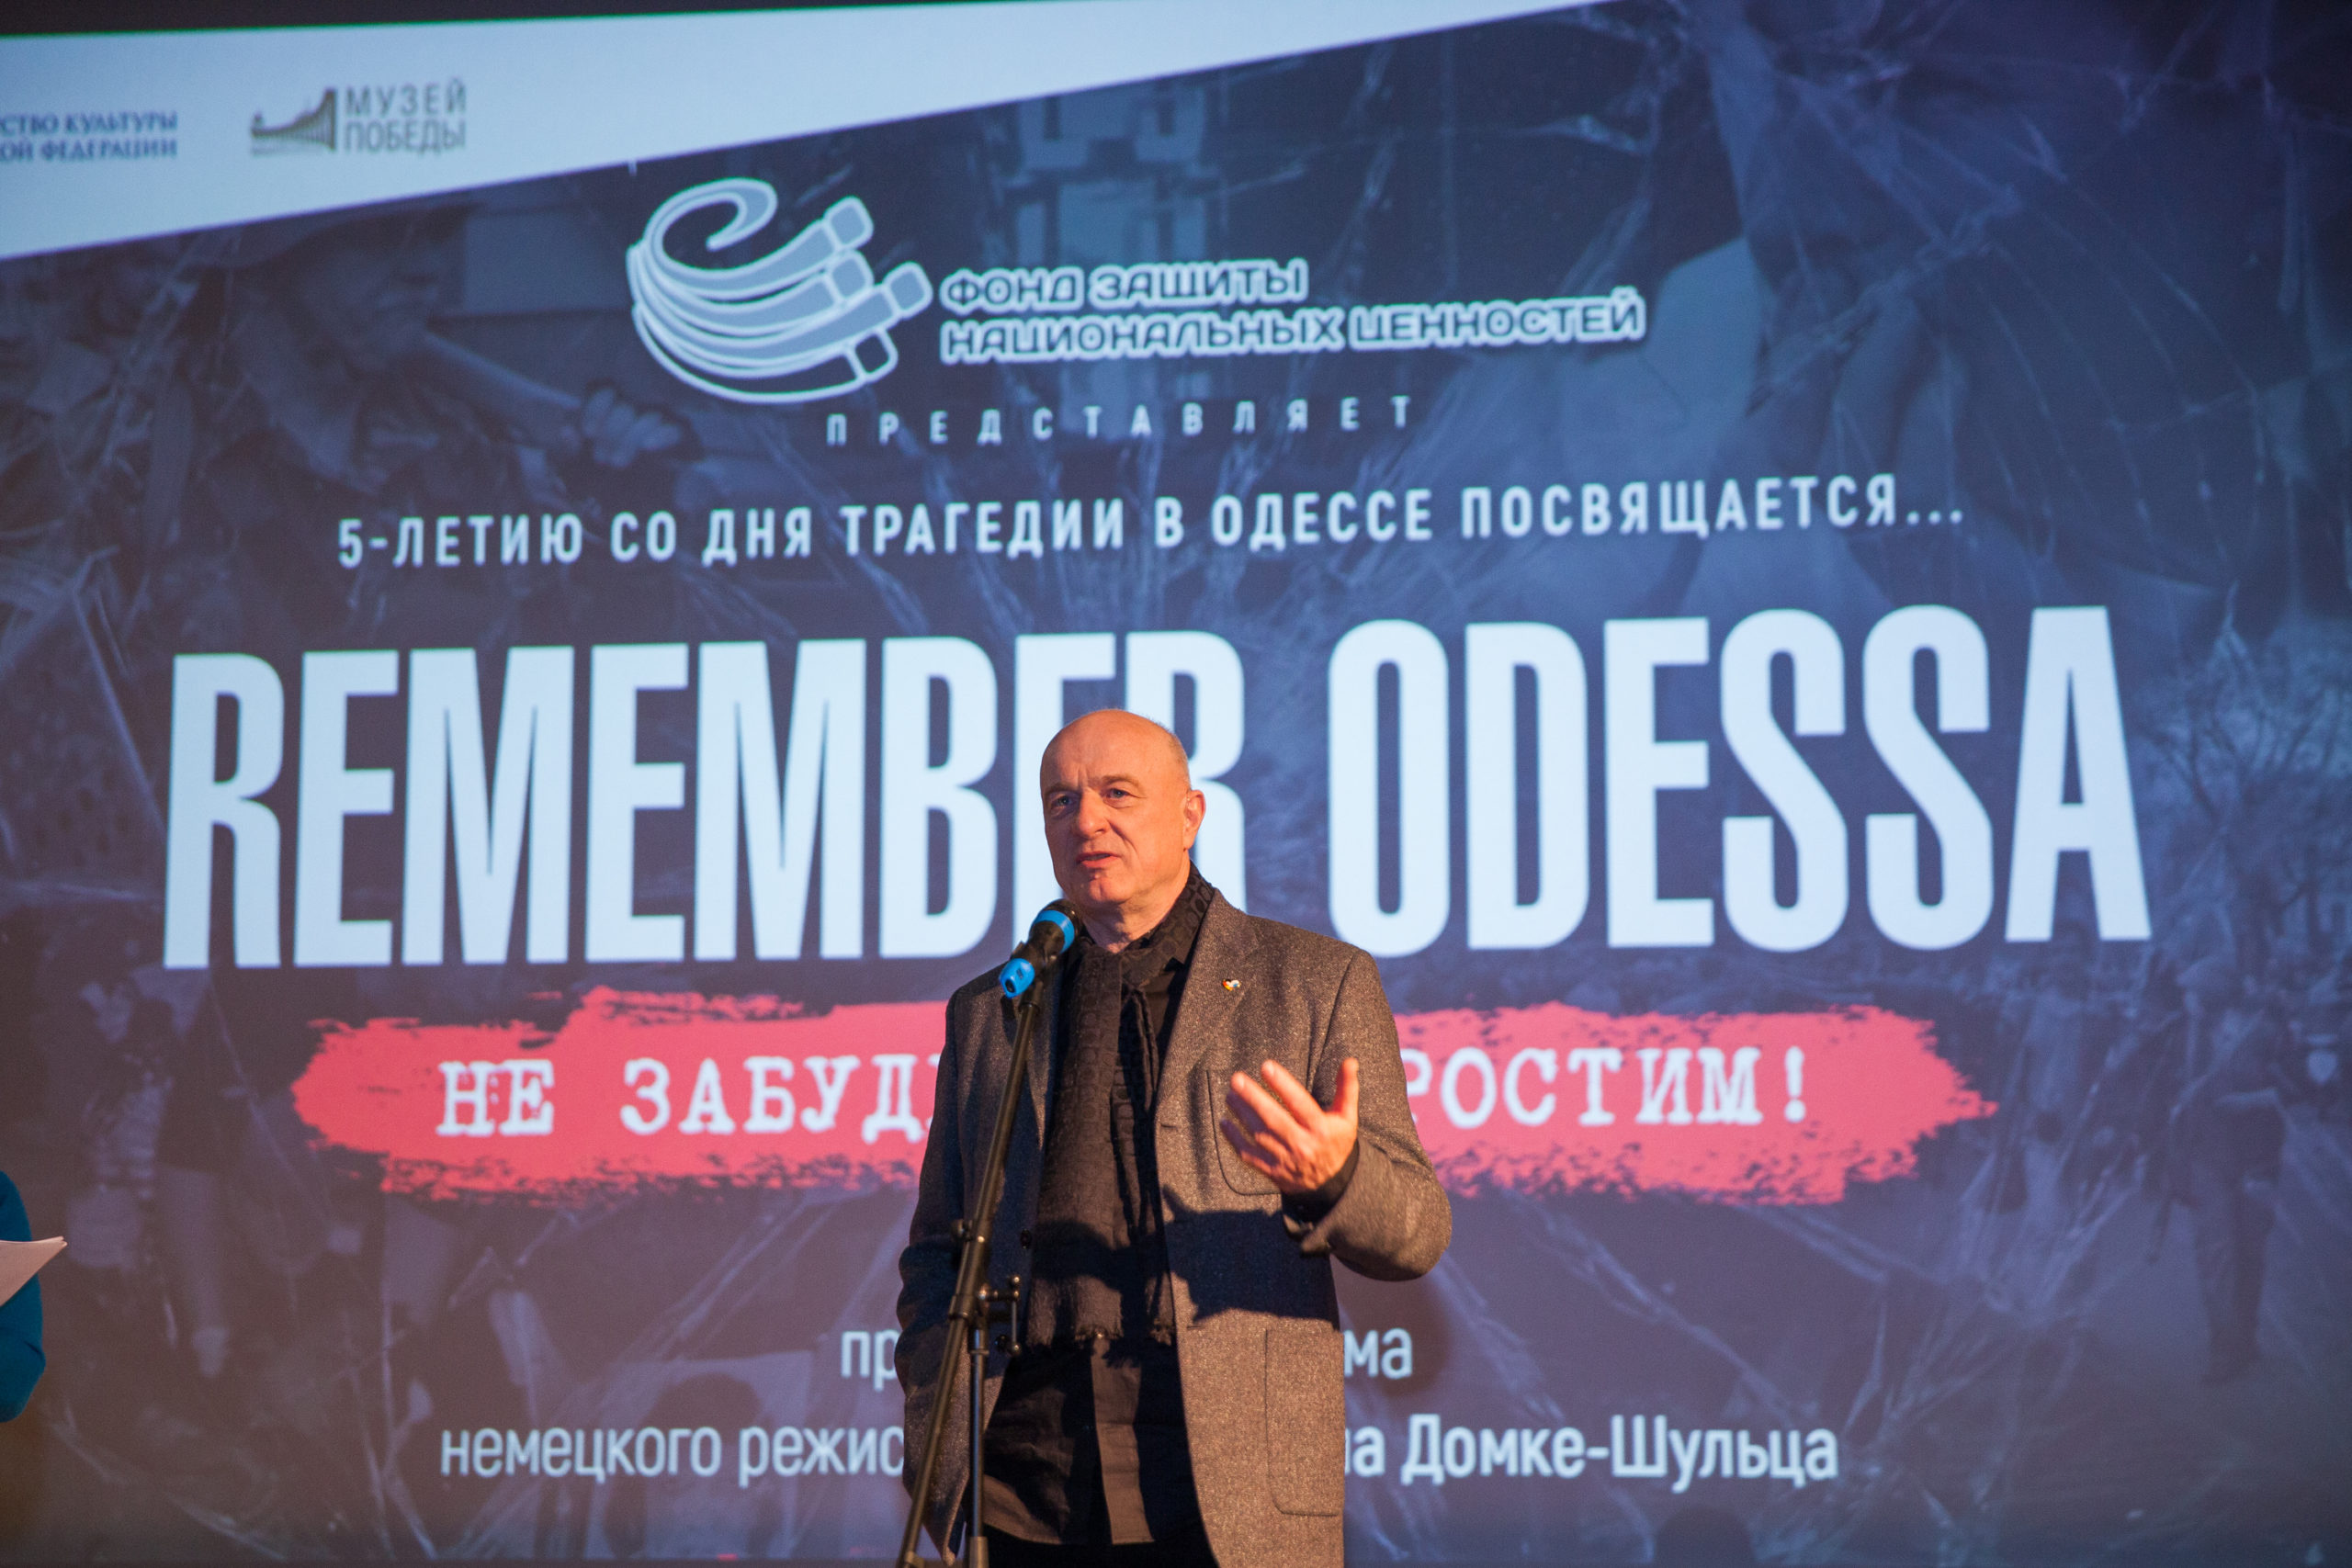 Впервые показан фильм о событиях в Одессе в 2014 году